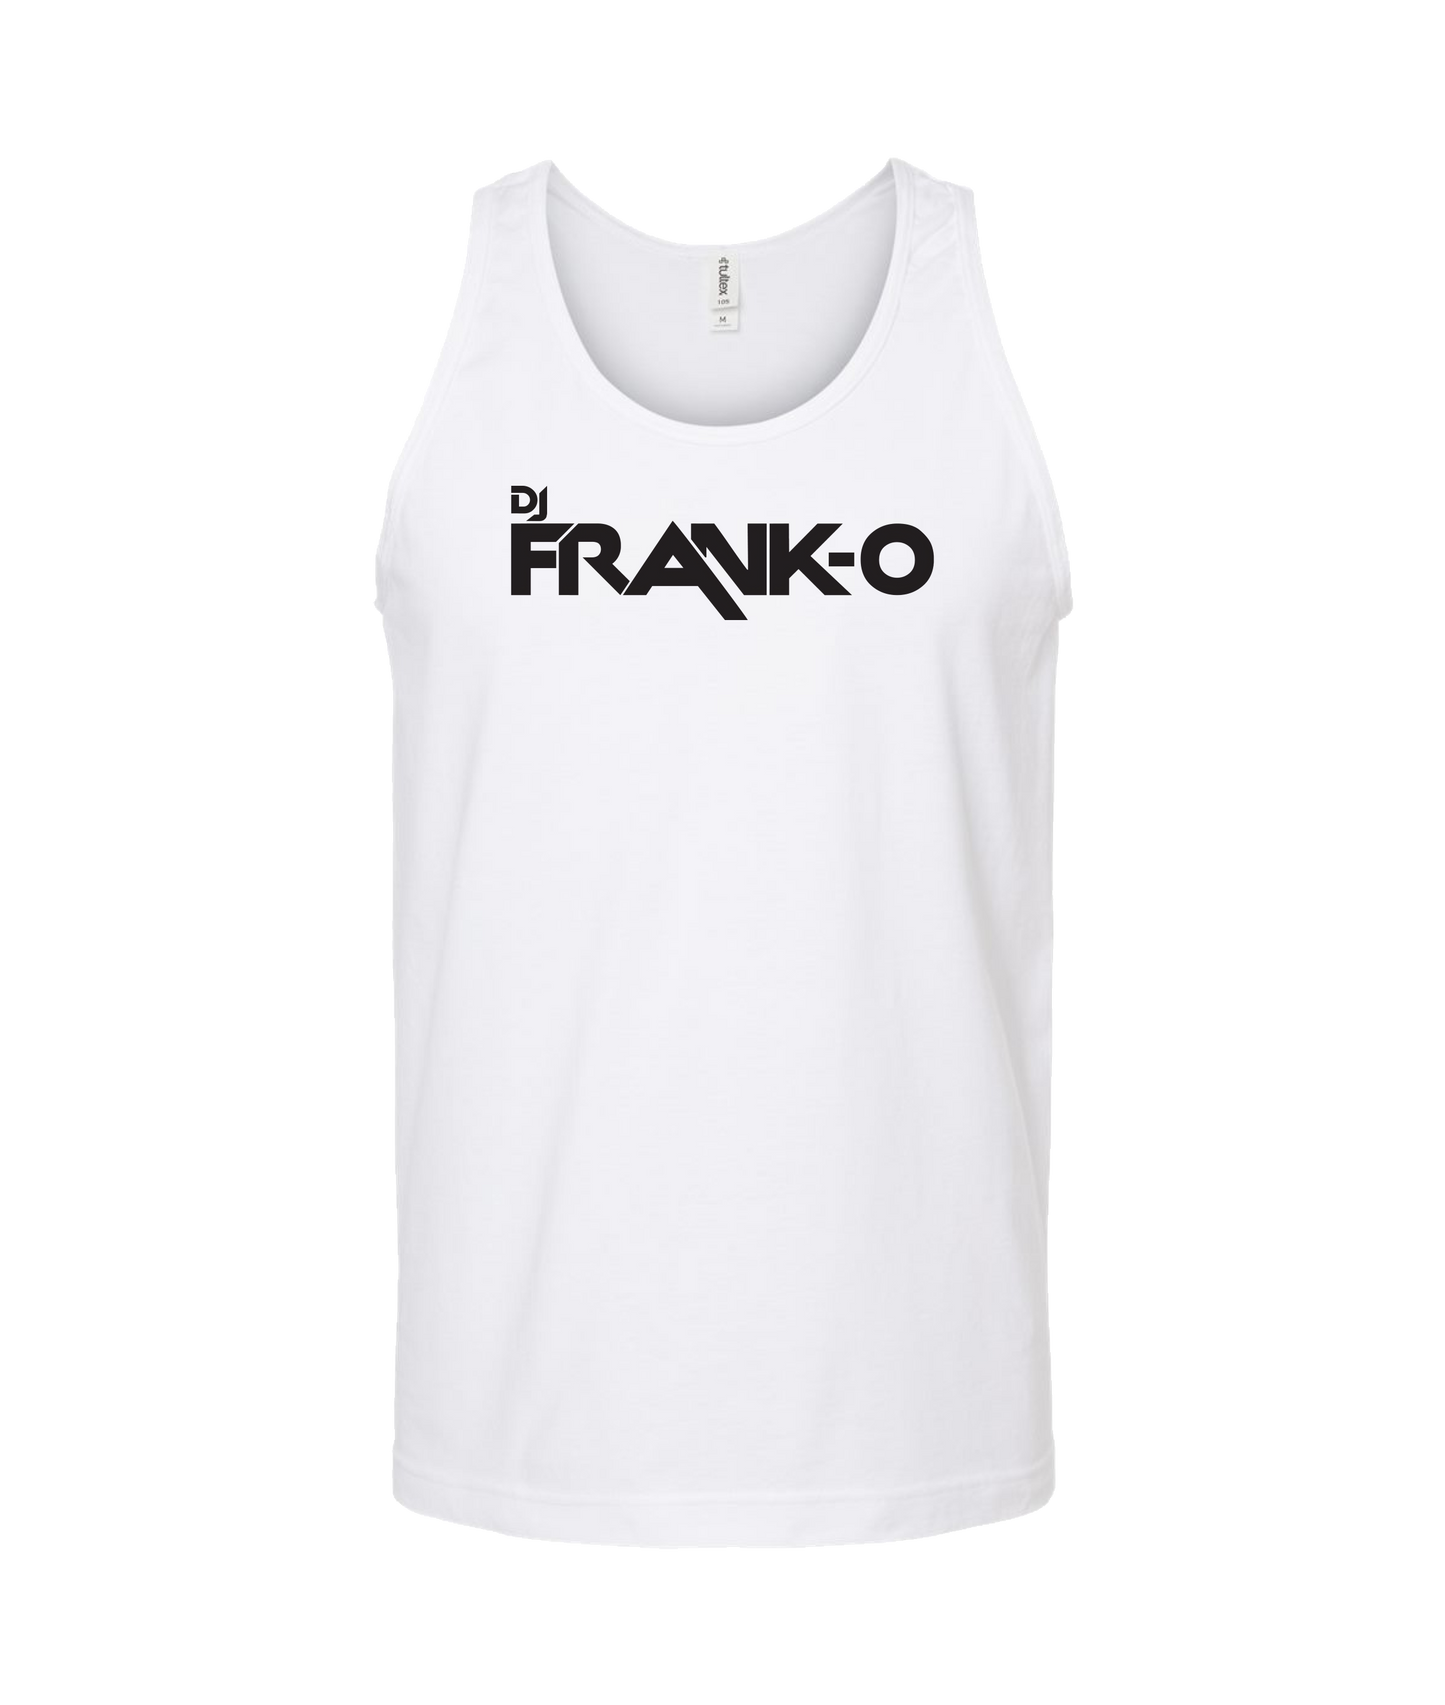 DJ FRANK - O - Logo - White Tank Top